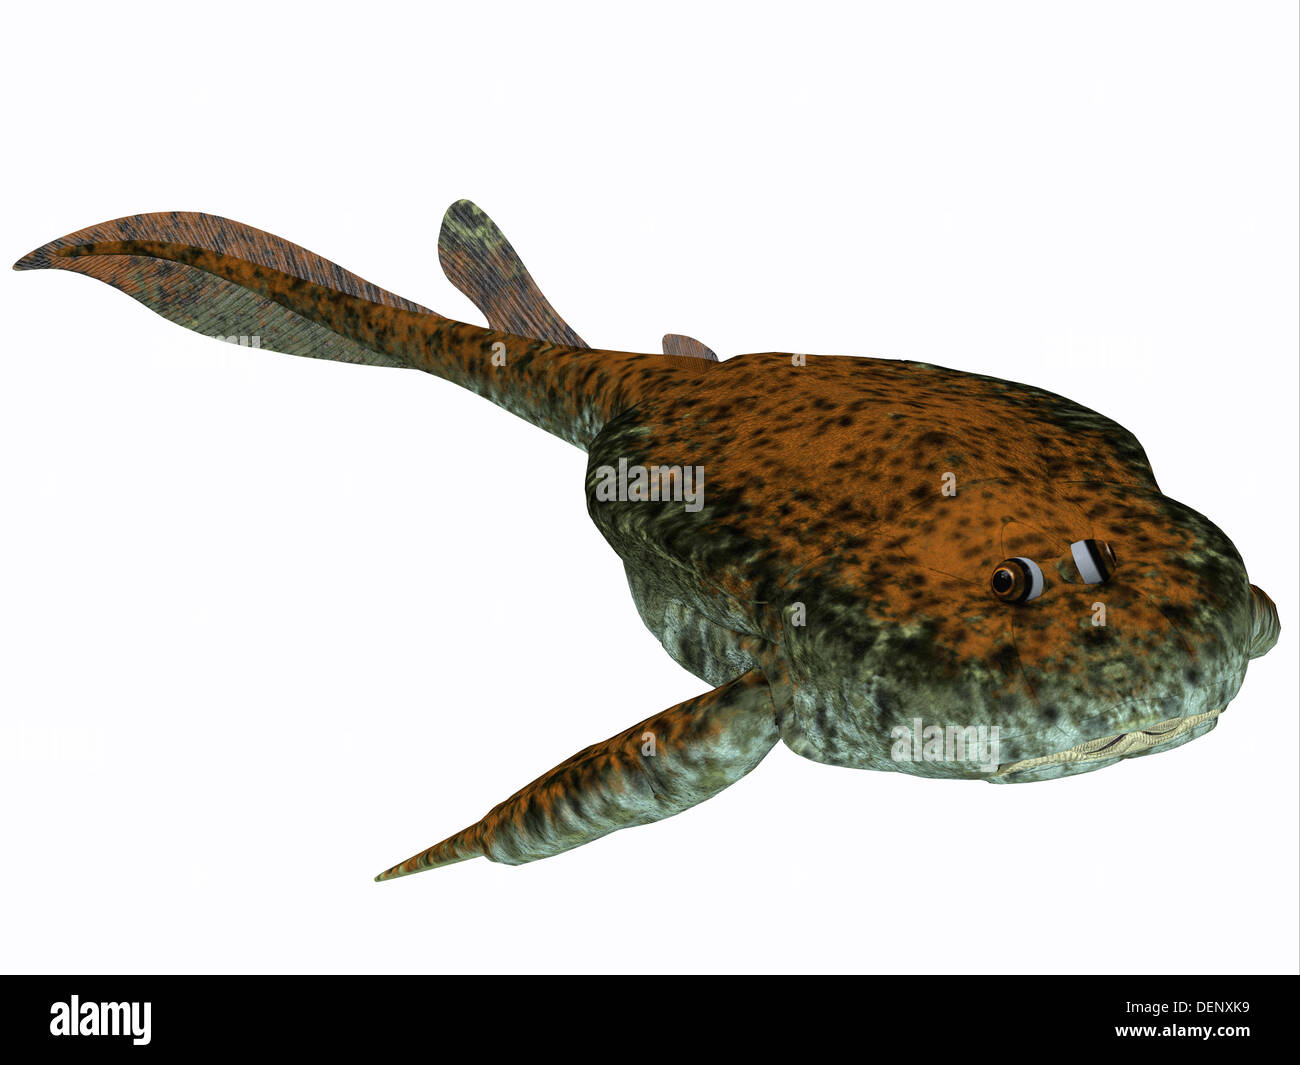 Era una dulce detrivore Bothropelpis (alimentador inferior), que vivió en el Período Devoniano. Foto de stock